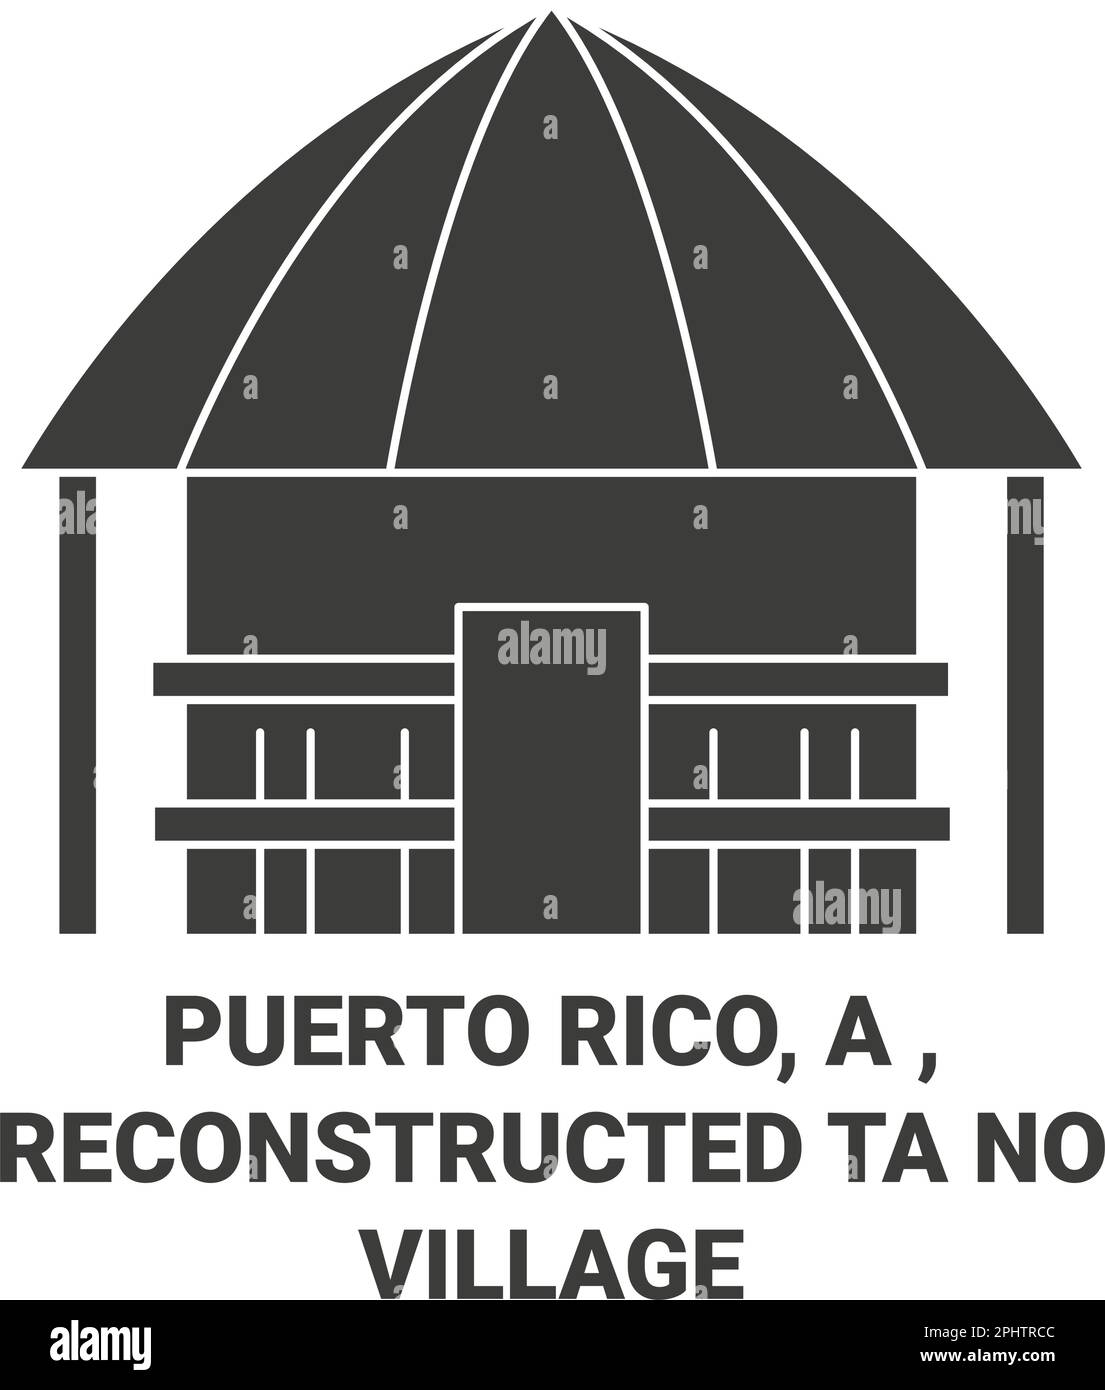 Puerto Rico, rekonstruiertes Tano Village Reise-Wahrzeichen-Vektorbild Stock Vektor